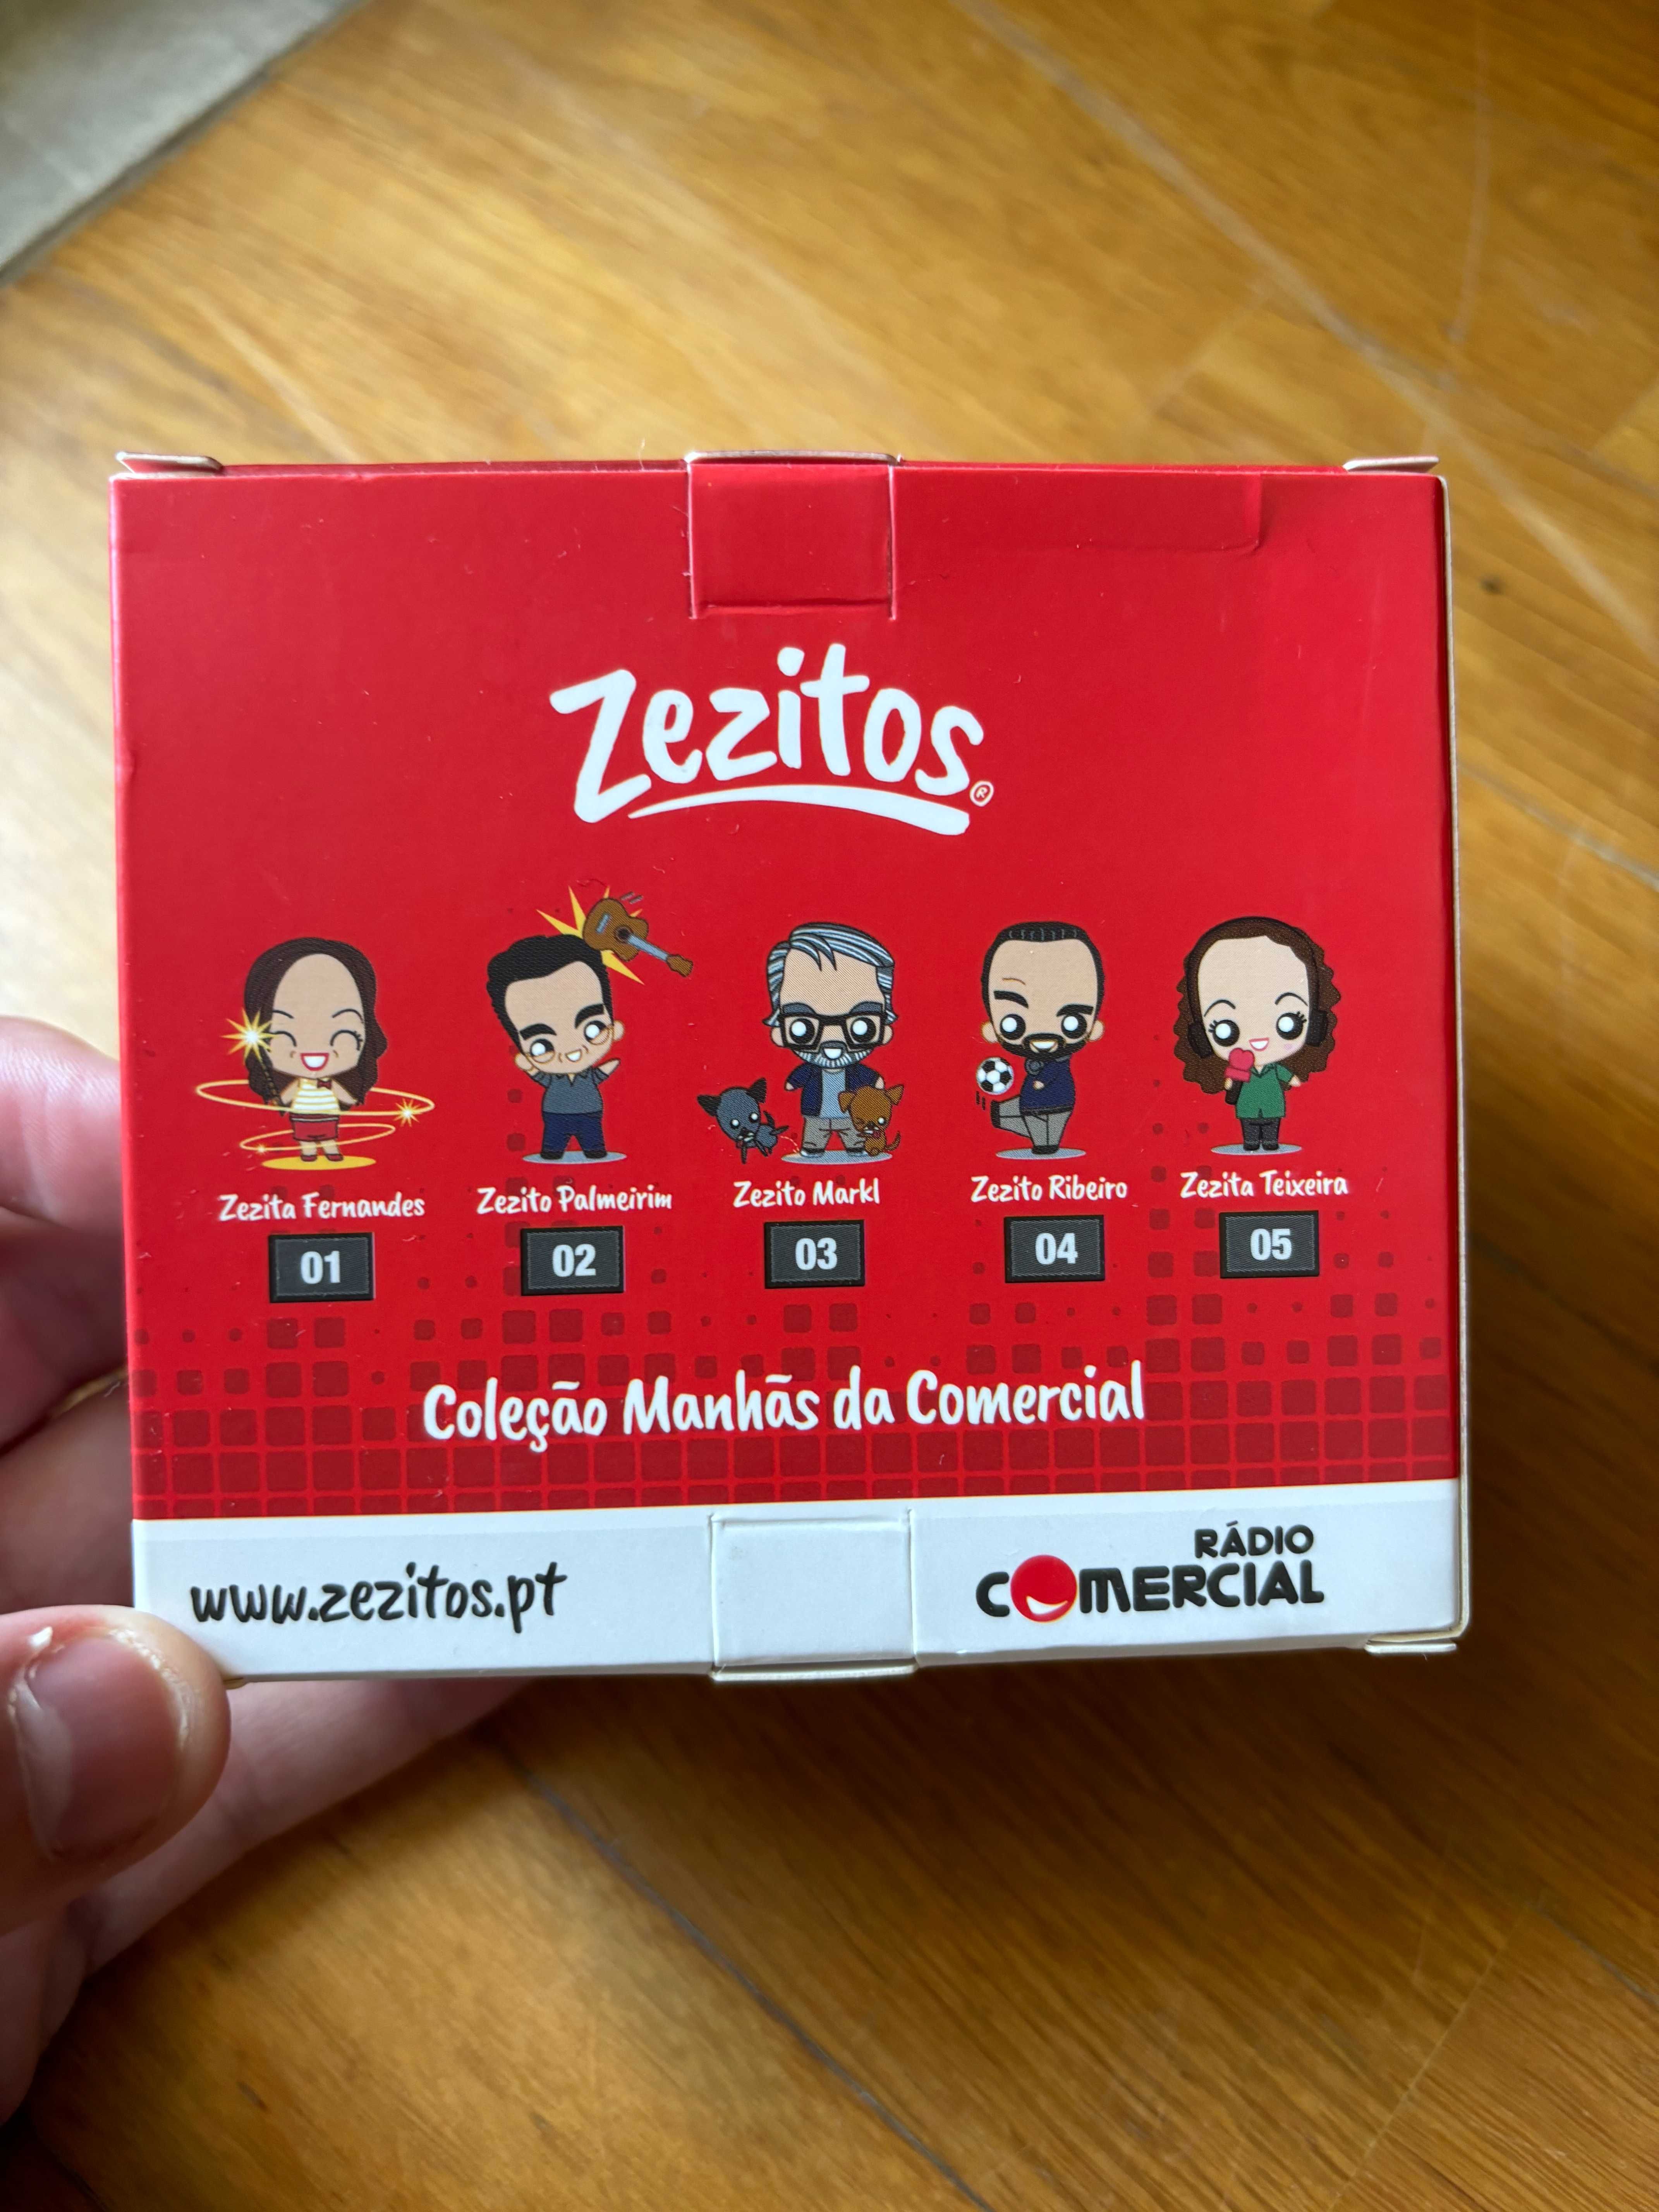 Coleção Manhãs da Comercial - Boneco "Zezito Palmeirim" - Novo, Selado